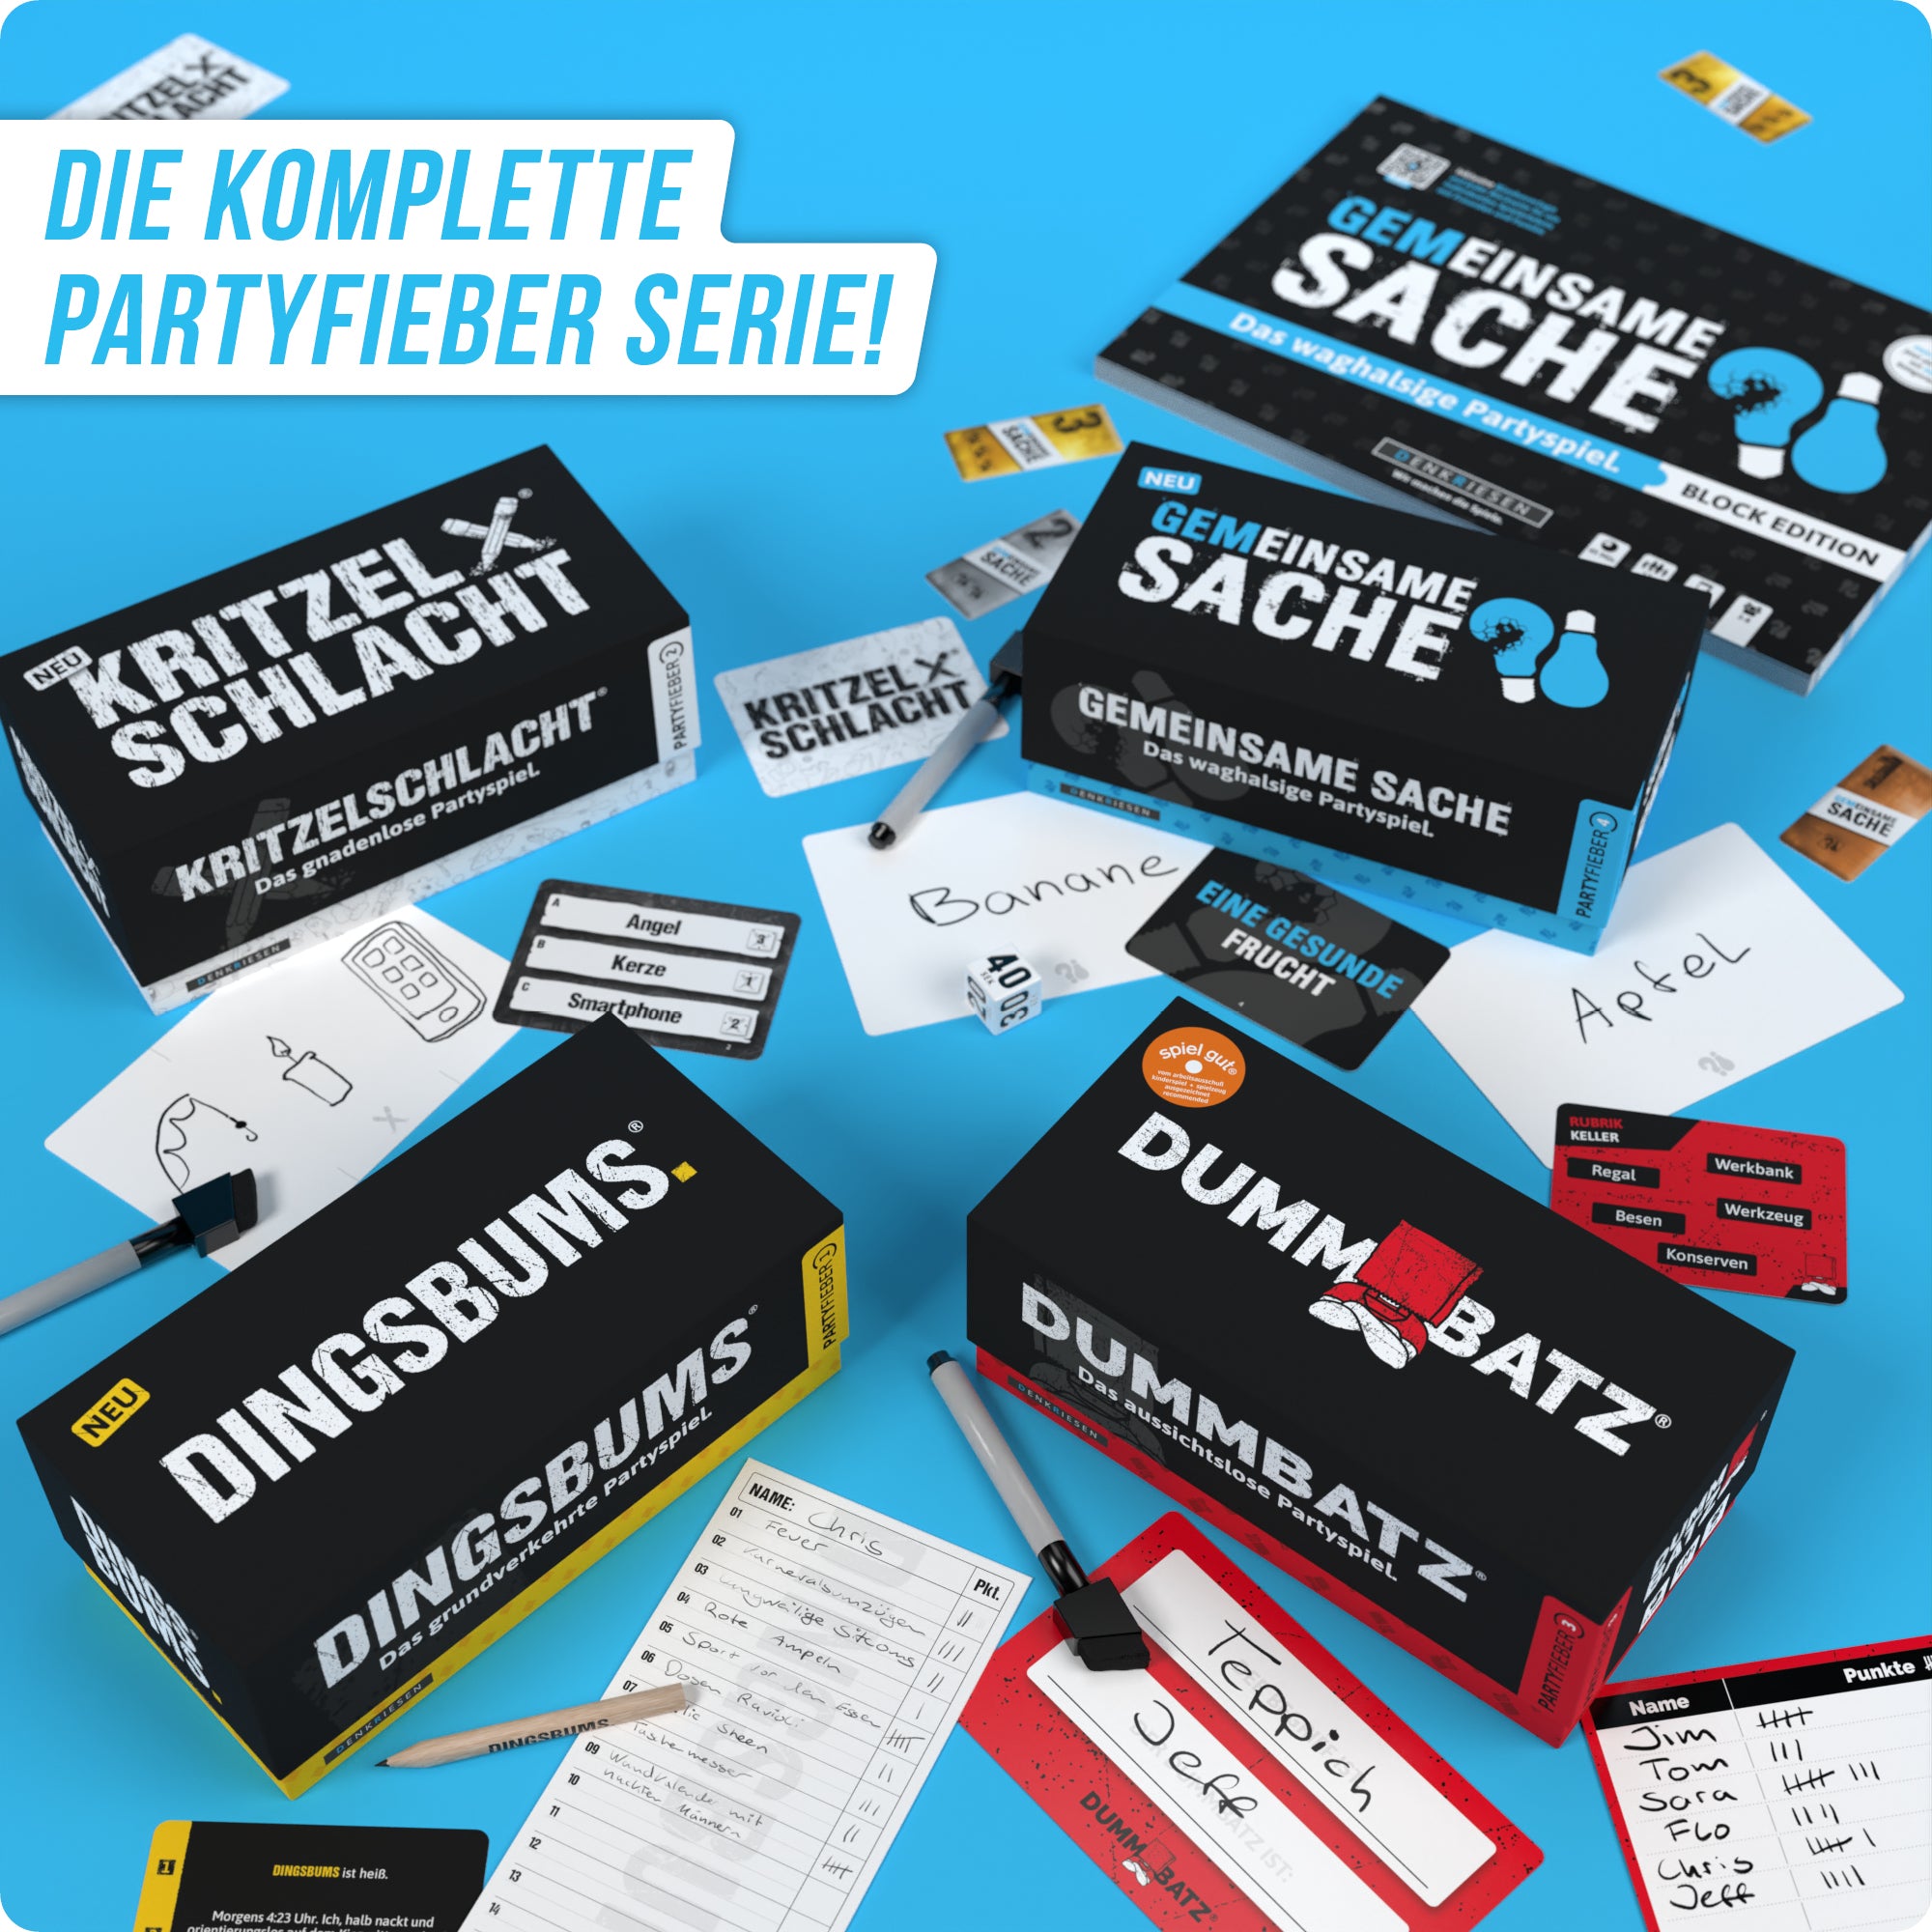 PARTYFIEBER - DINGSBUMS® "Das grundverkehrte Partyspiel"